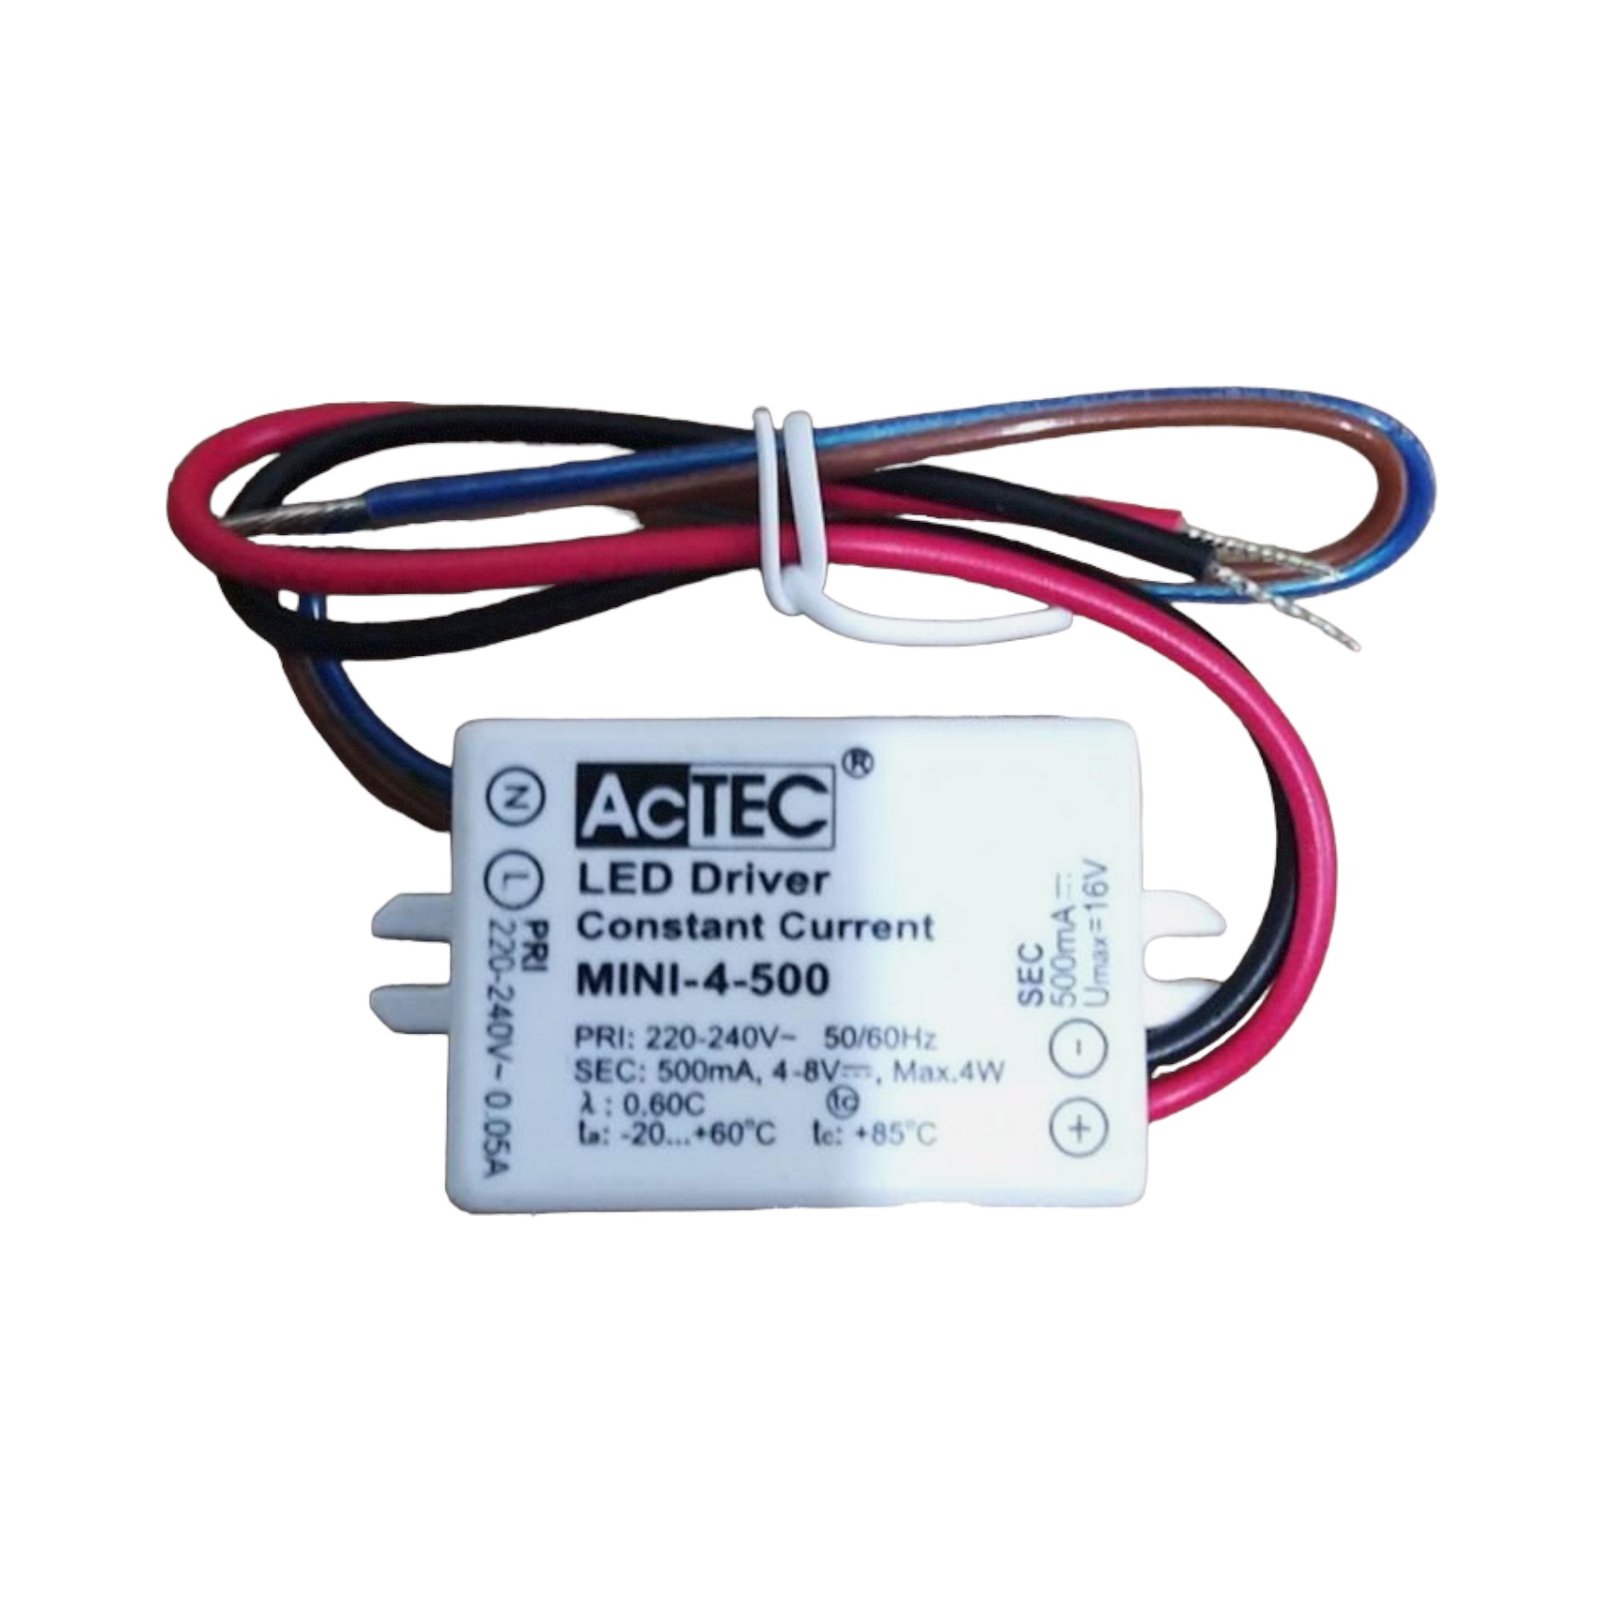 AcTEC Mini LED budič CC 500 mA, 4 W, IP65